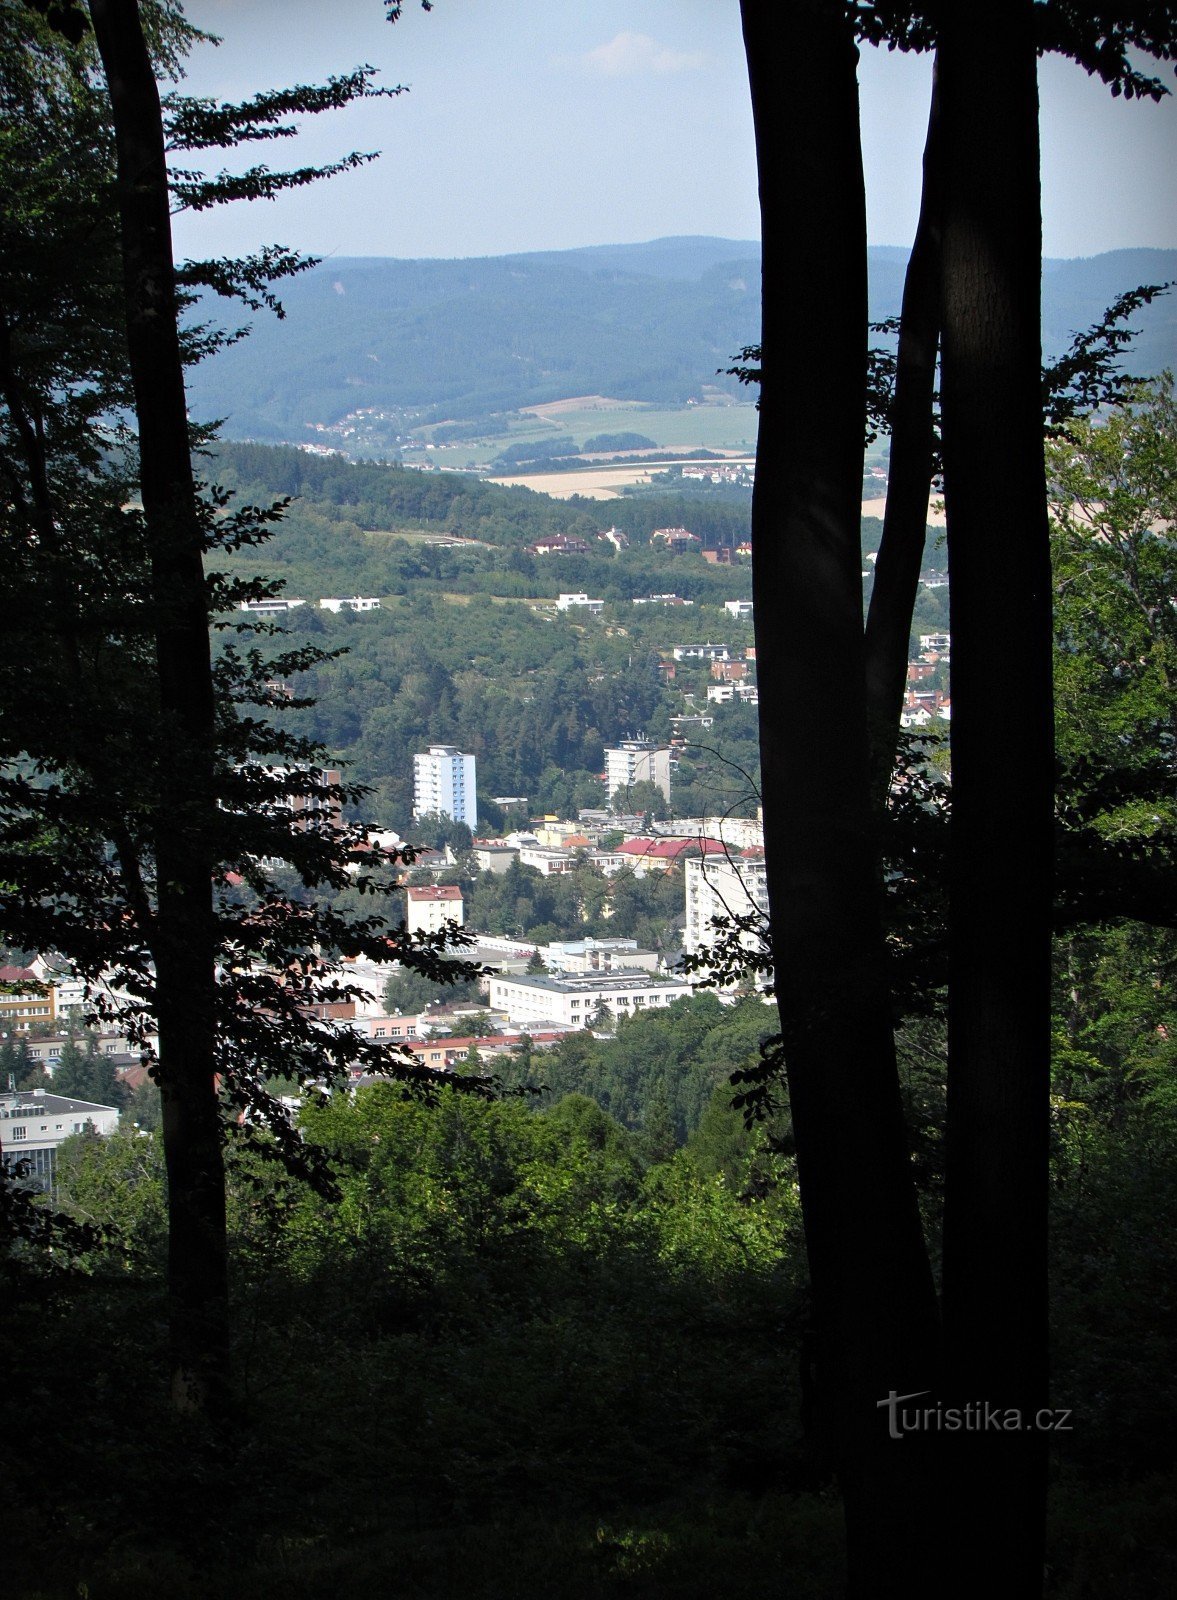 Zlín - limited view from Barabáš